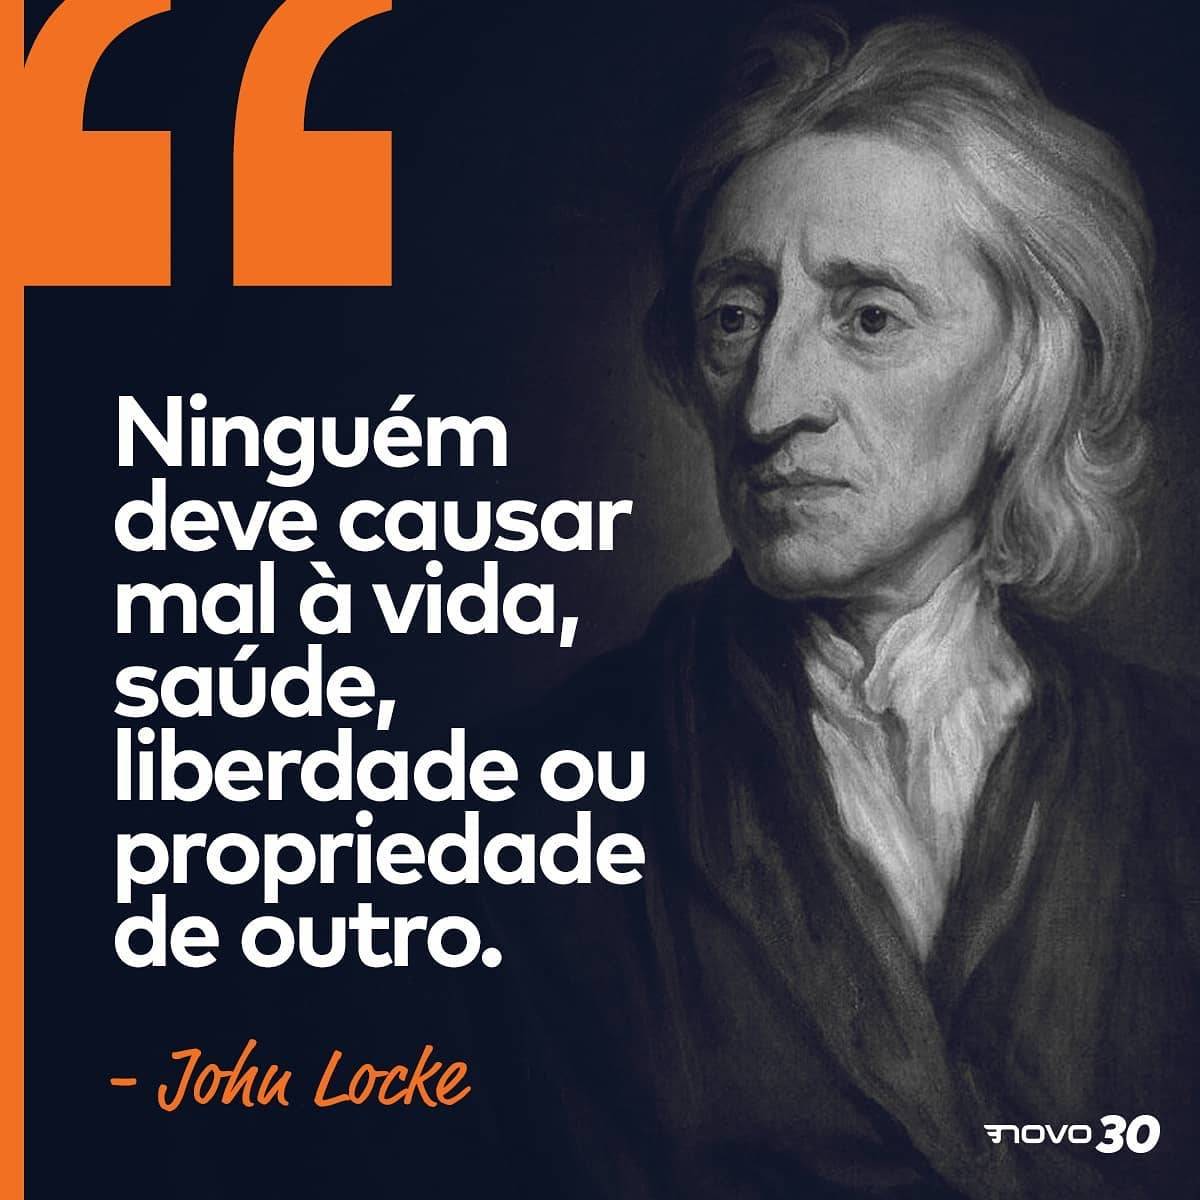 John Locke Novo